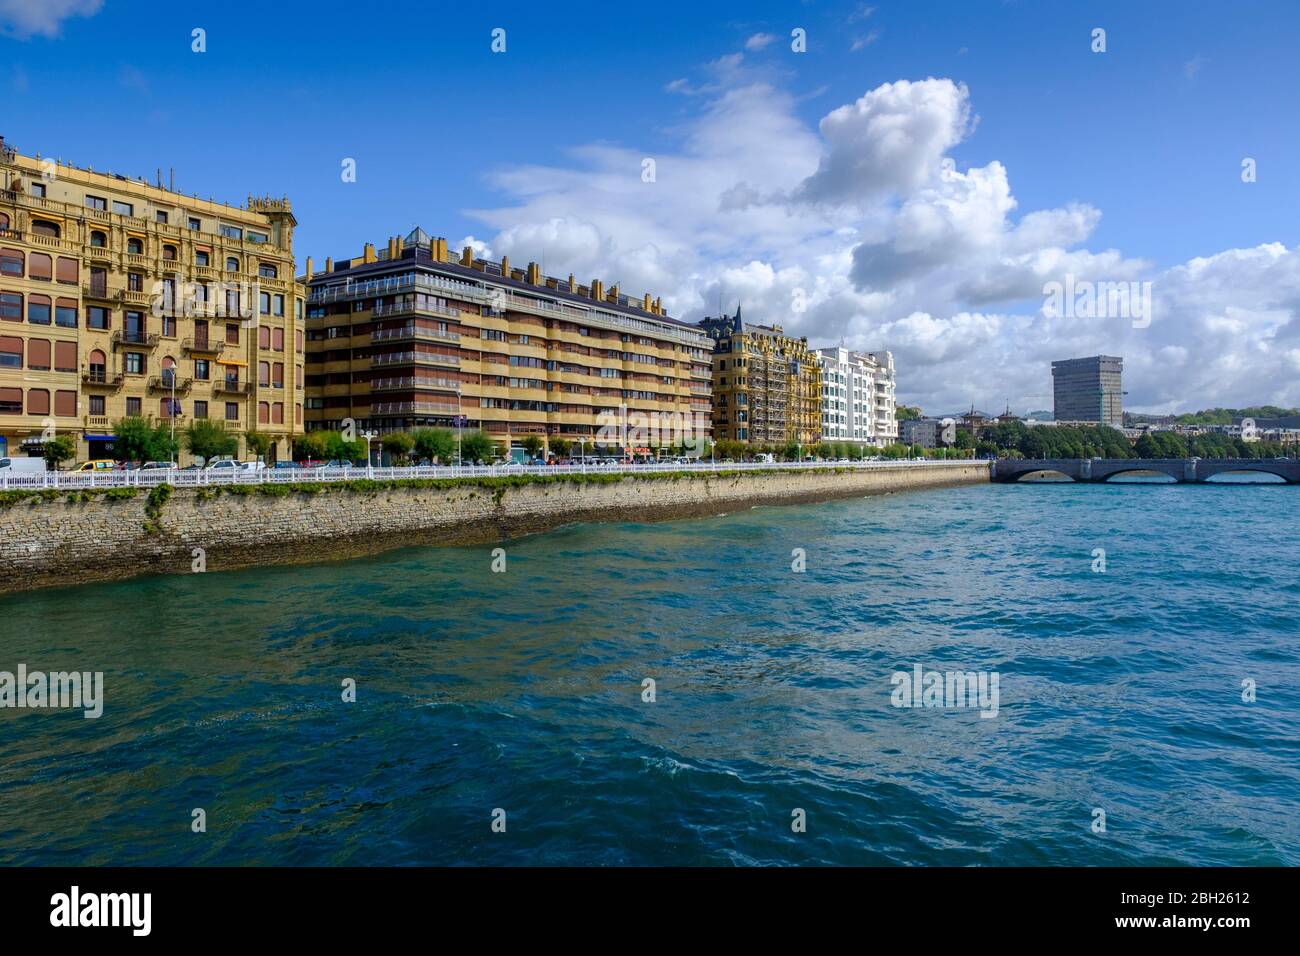 Spain, Gipuzkoa, San Sebastian, City buildings along bank of Urumea river Stock Photo